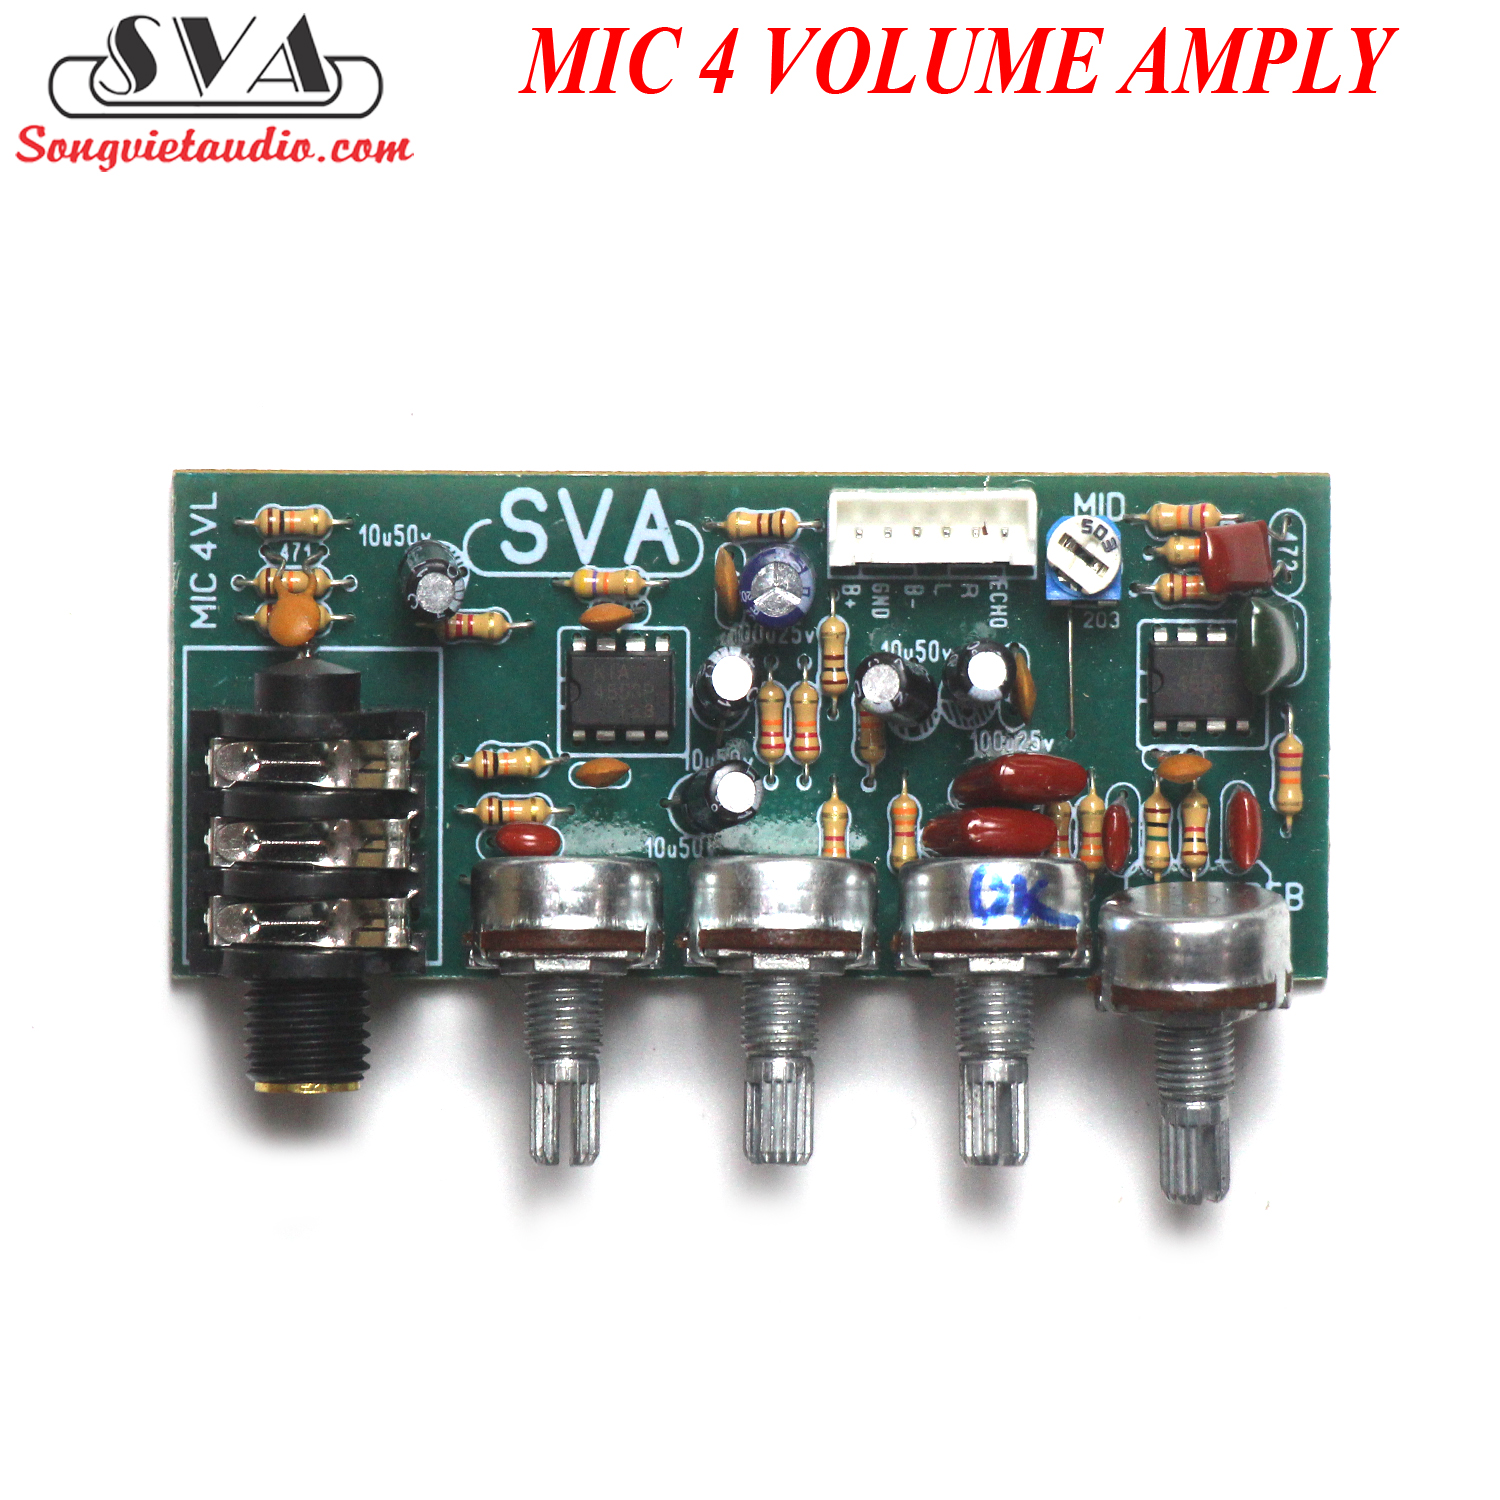 https://songvietaudio.com/mic-4-volume-ampli-hat-van-3388.html